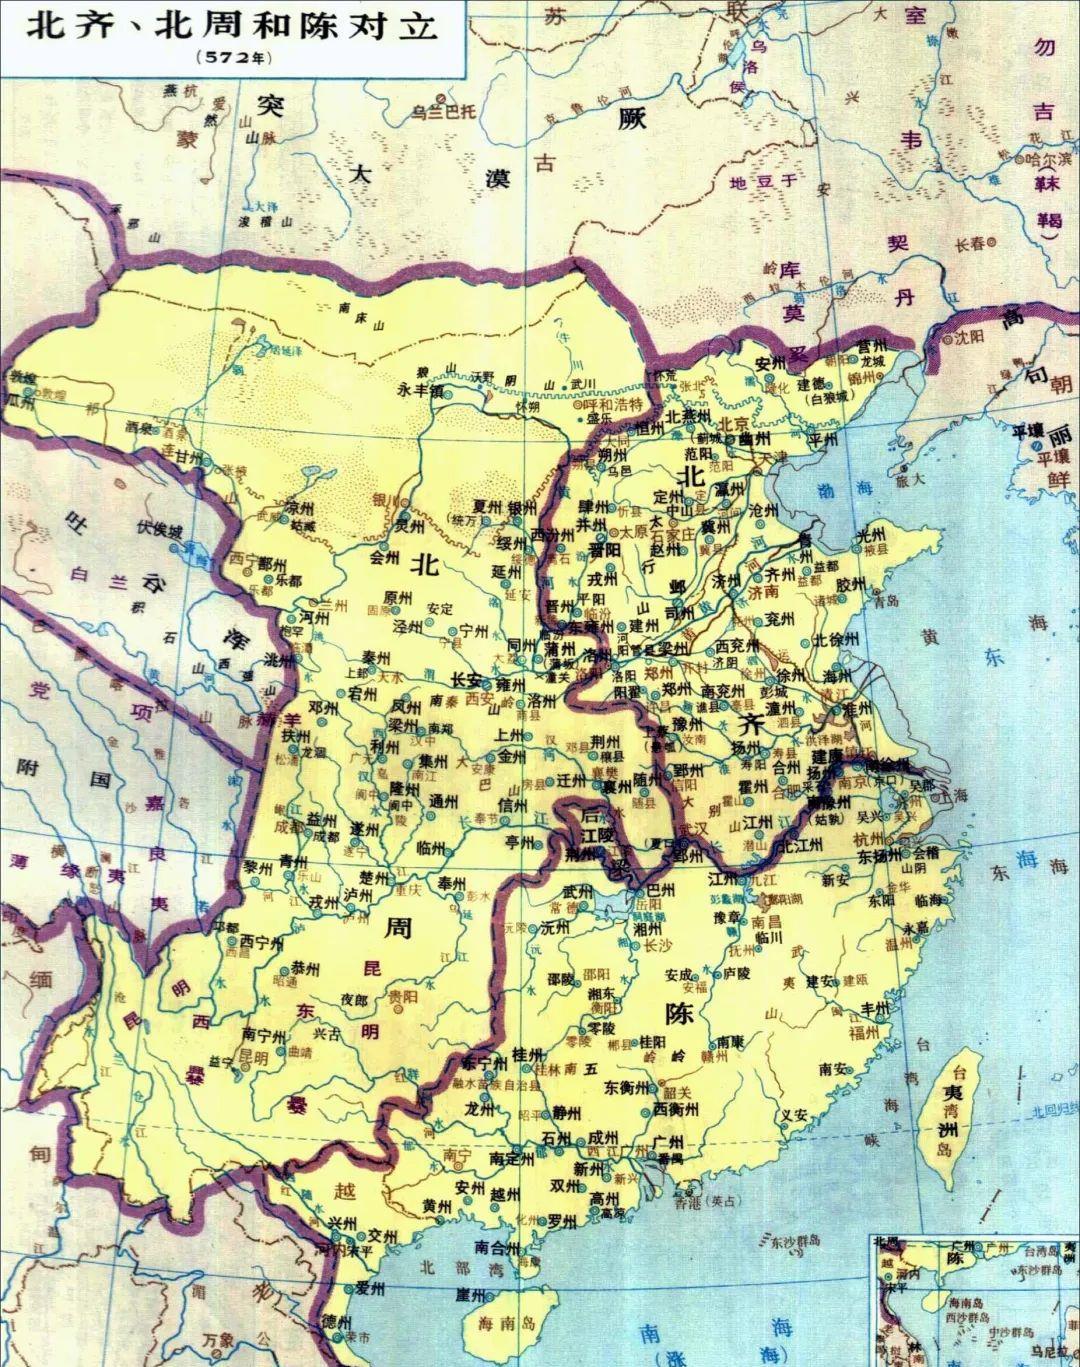 南北朝之北齐·常平五铢 北齐地图——来源于网络